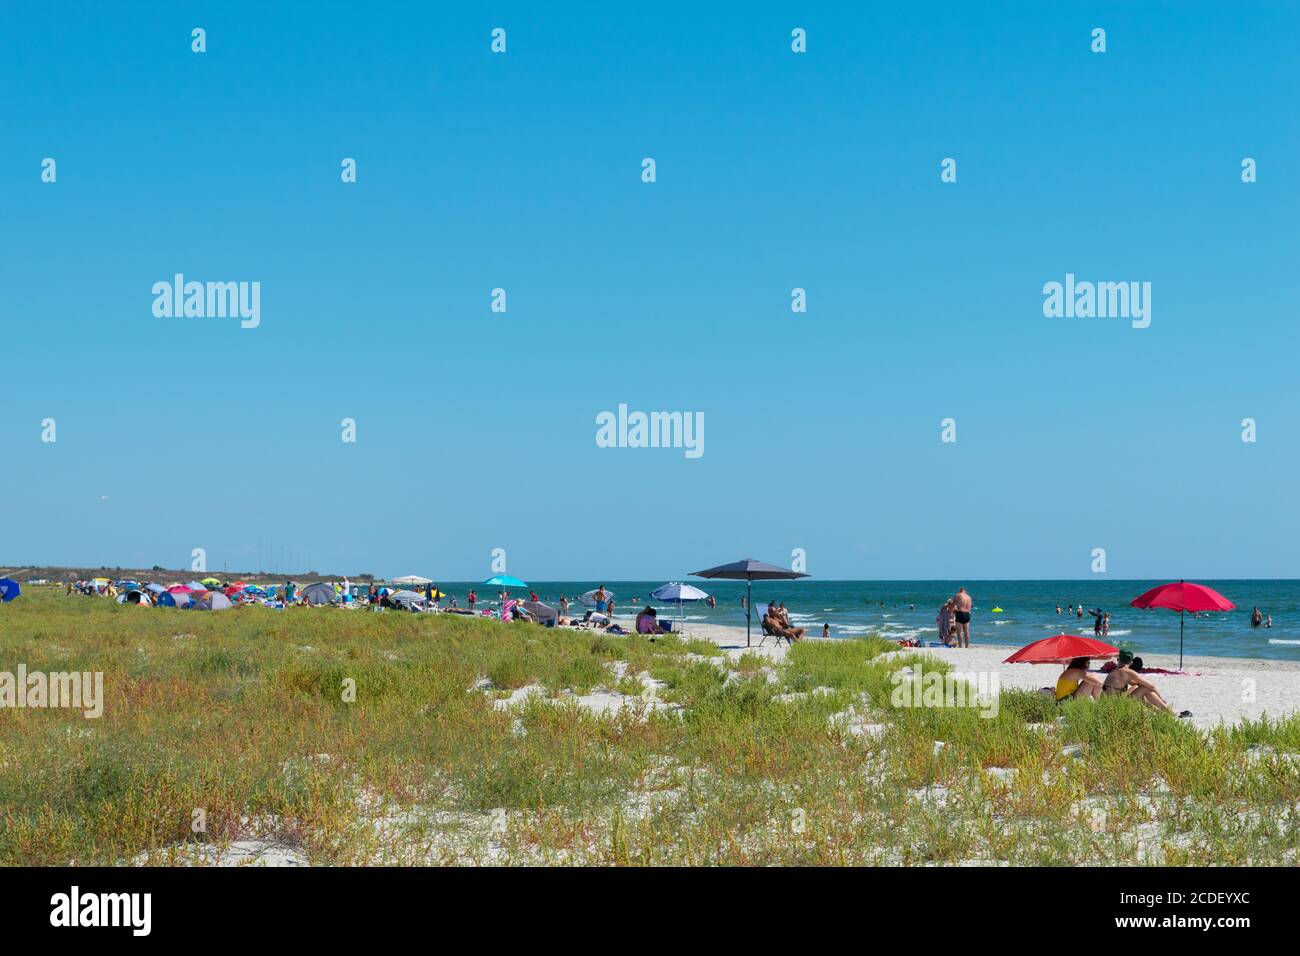 Corbu, Constanta, Rumänien - 18. August 2019: Die Menschen genießen einen entspannten Sommertag am letzten virging Strand in Corbu, Rumänien. Stockfoto